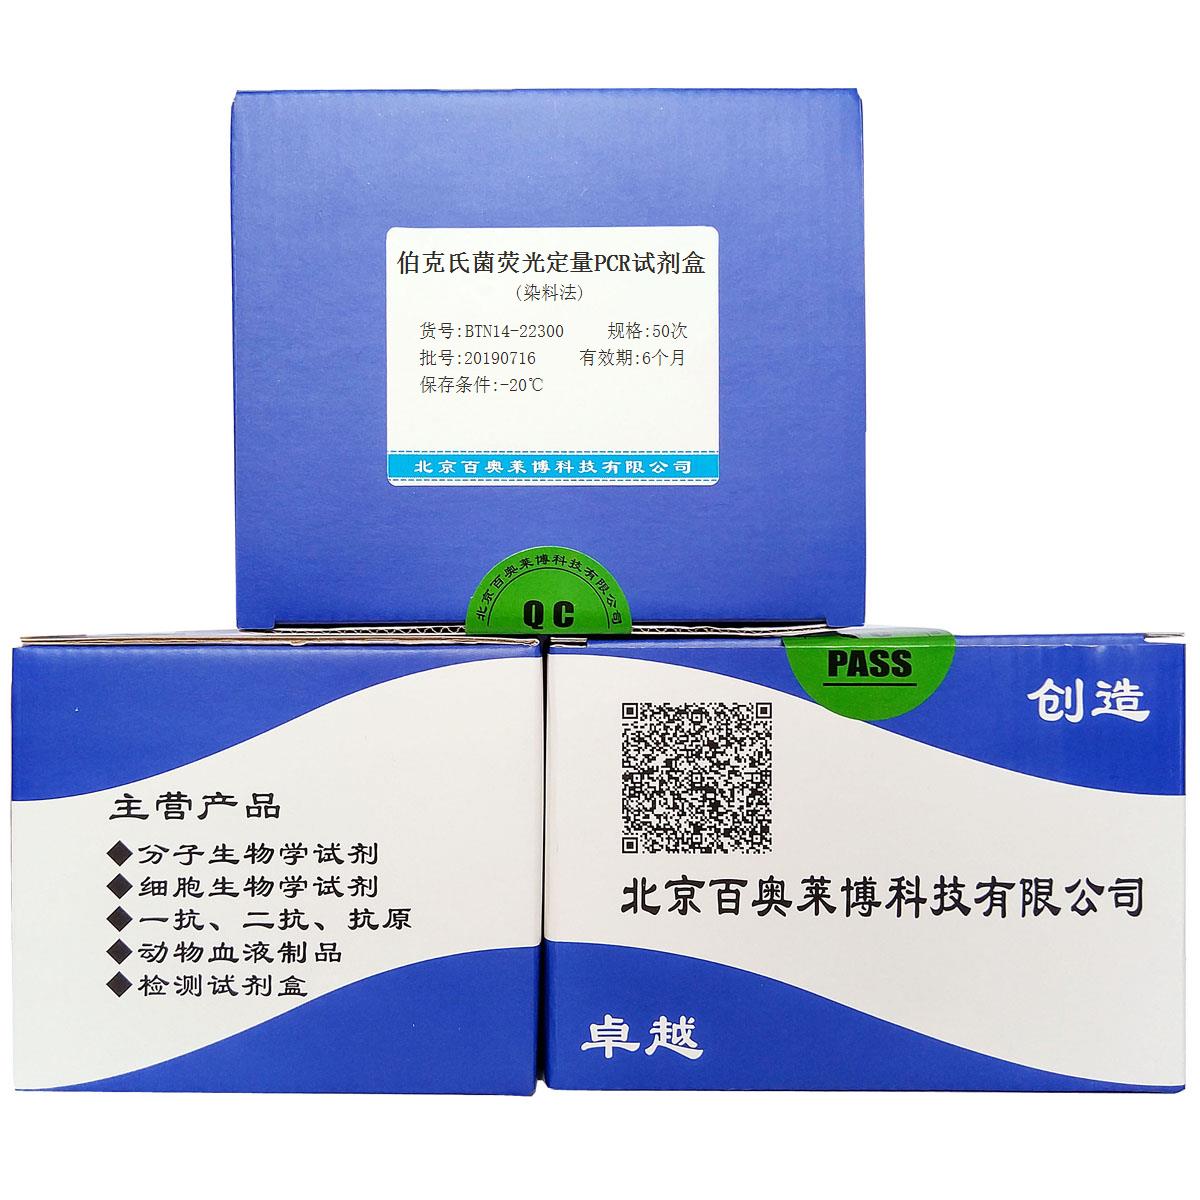 伯克氏菌荧光定量PCR试剂盒(染料法)北京现货